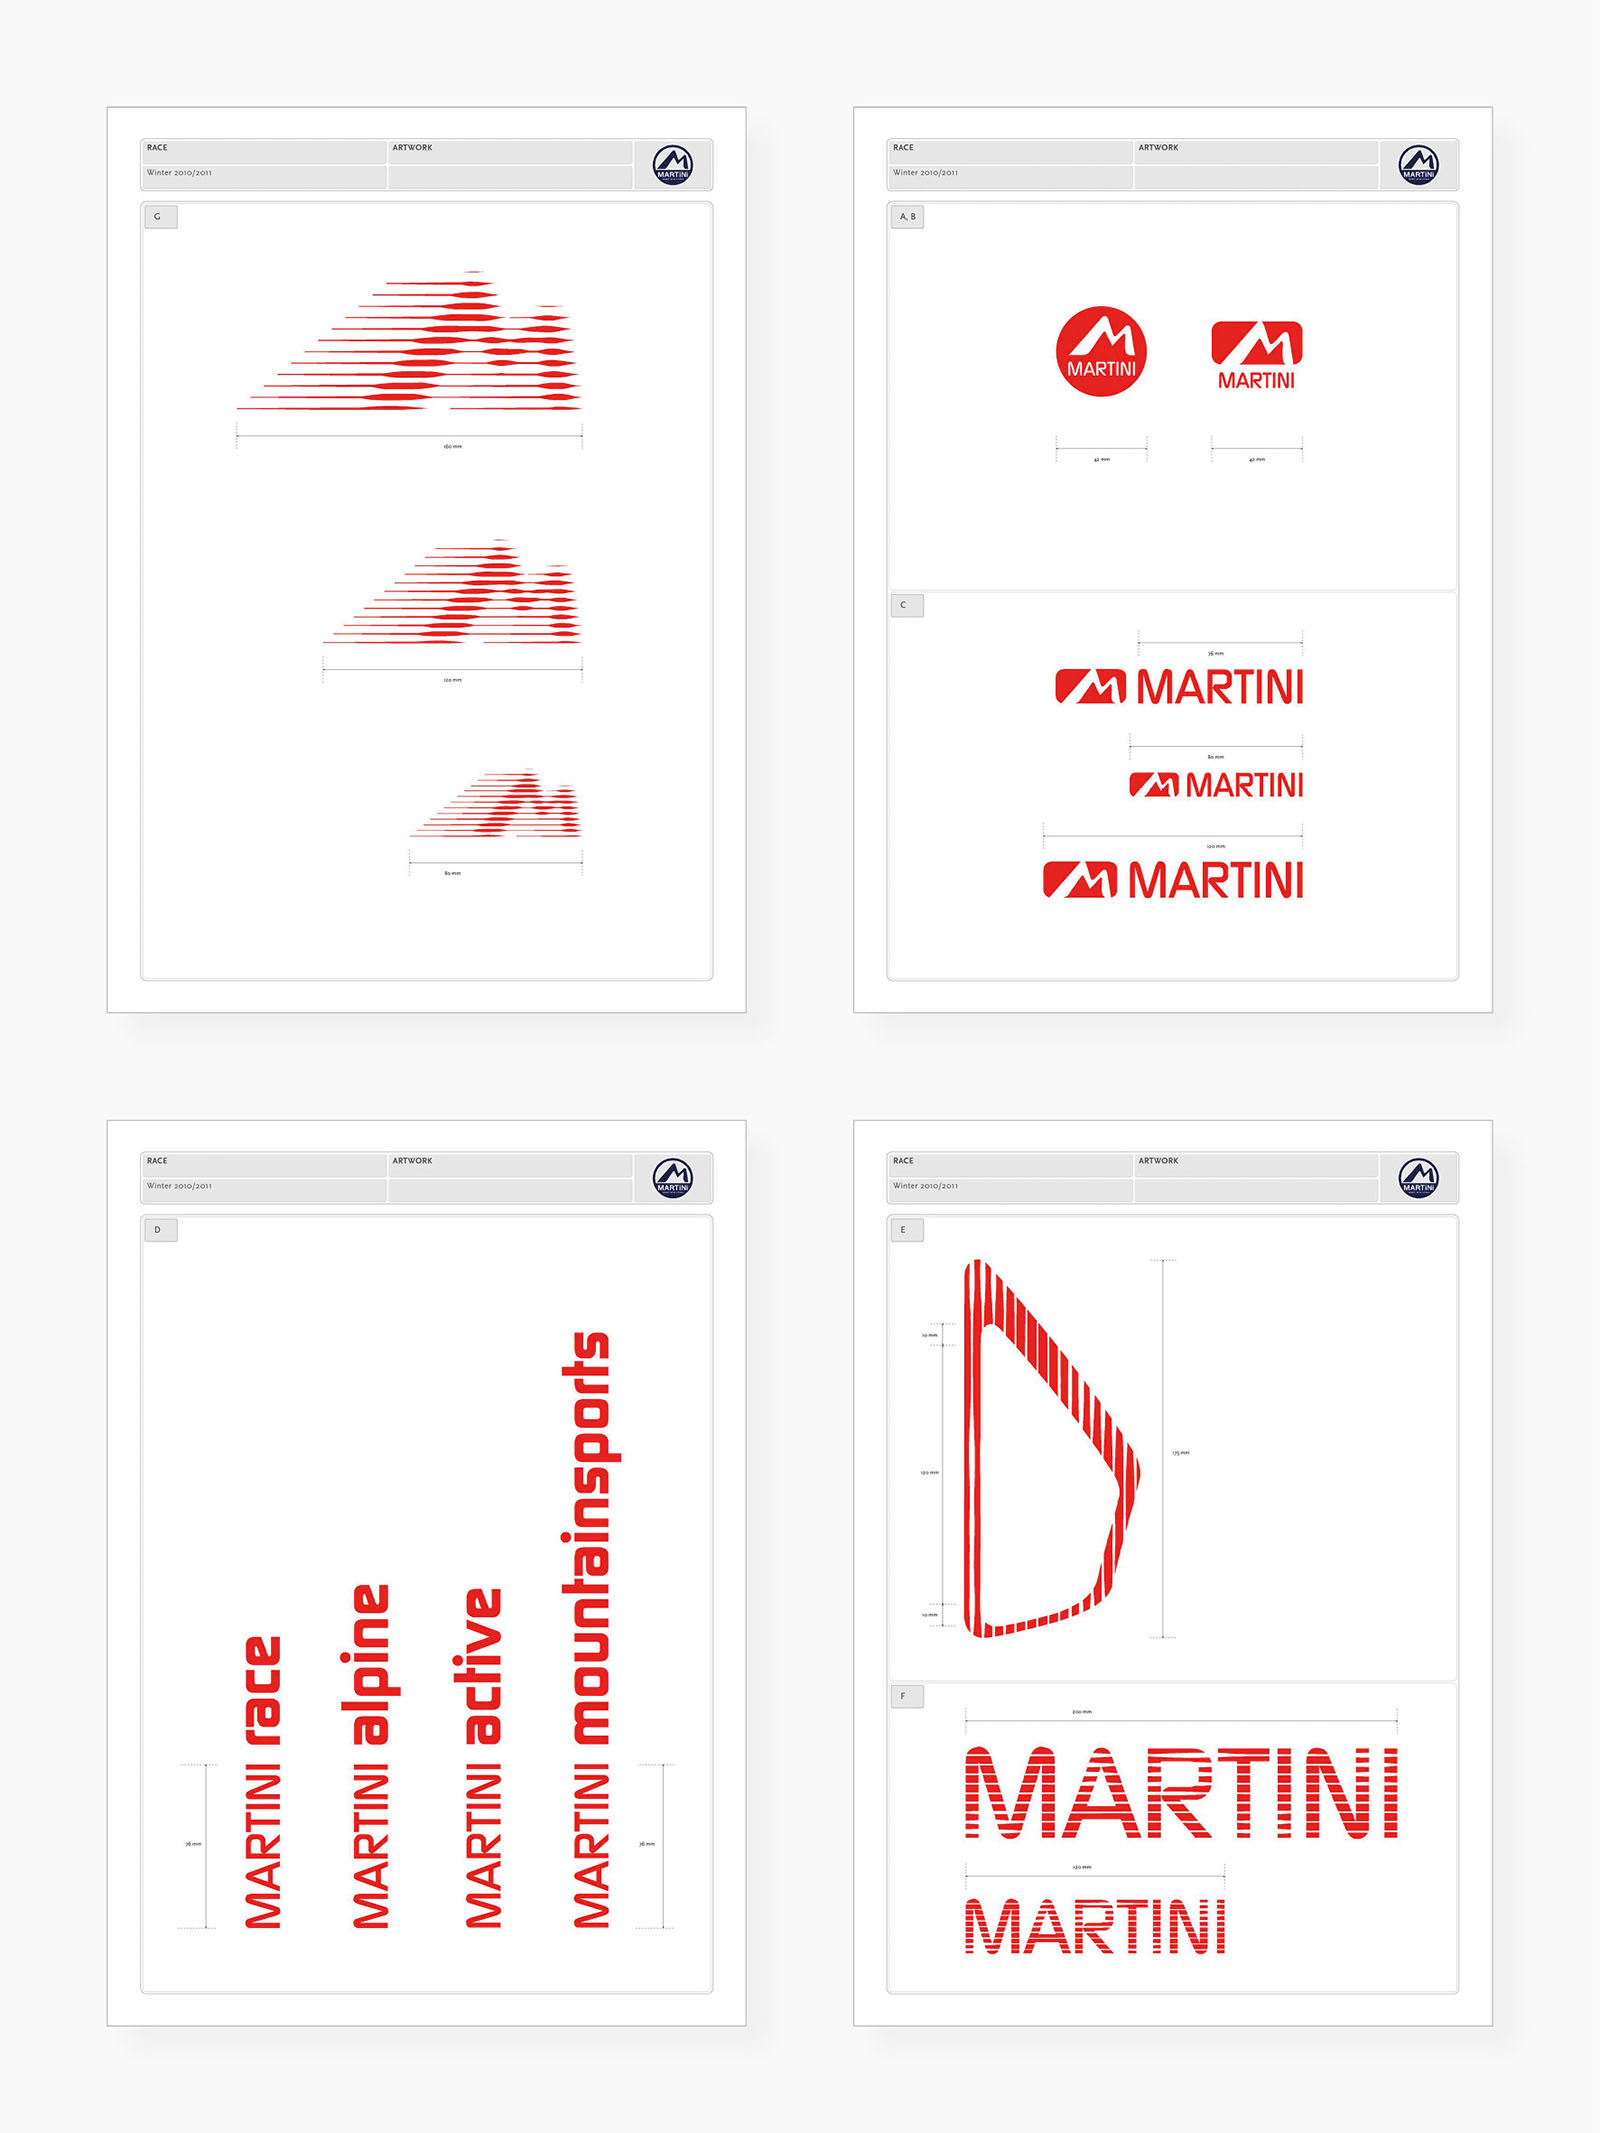 Präsentationsblätter für die Entwürfe von Graphik-Elementen ("Artworks") und Produktlogos, inklusive Maßangaben